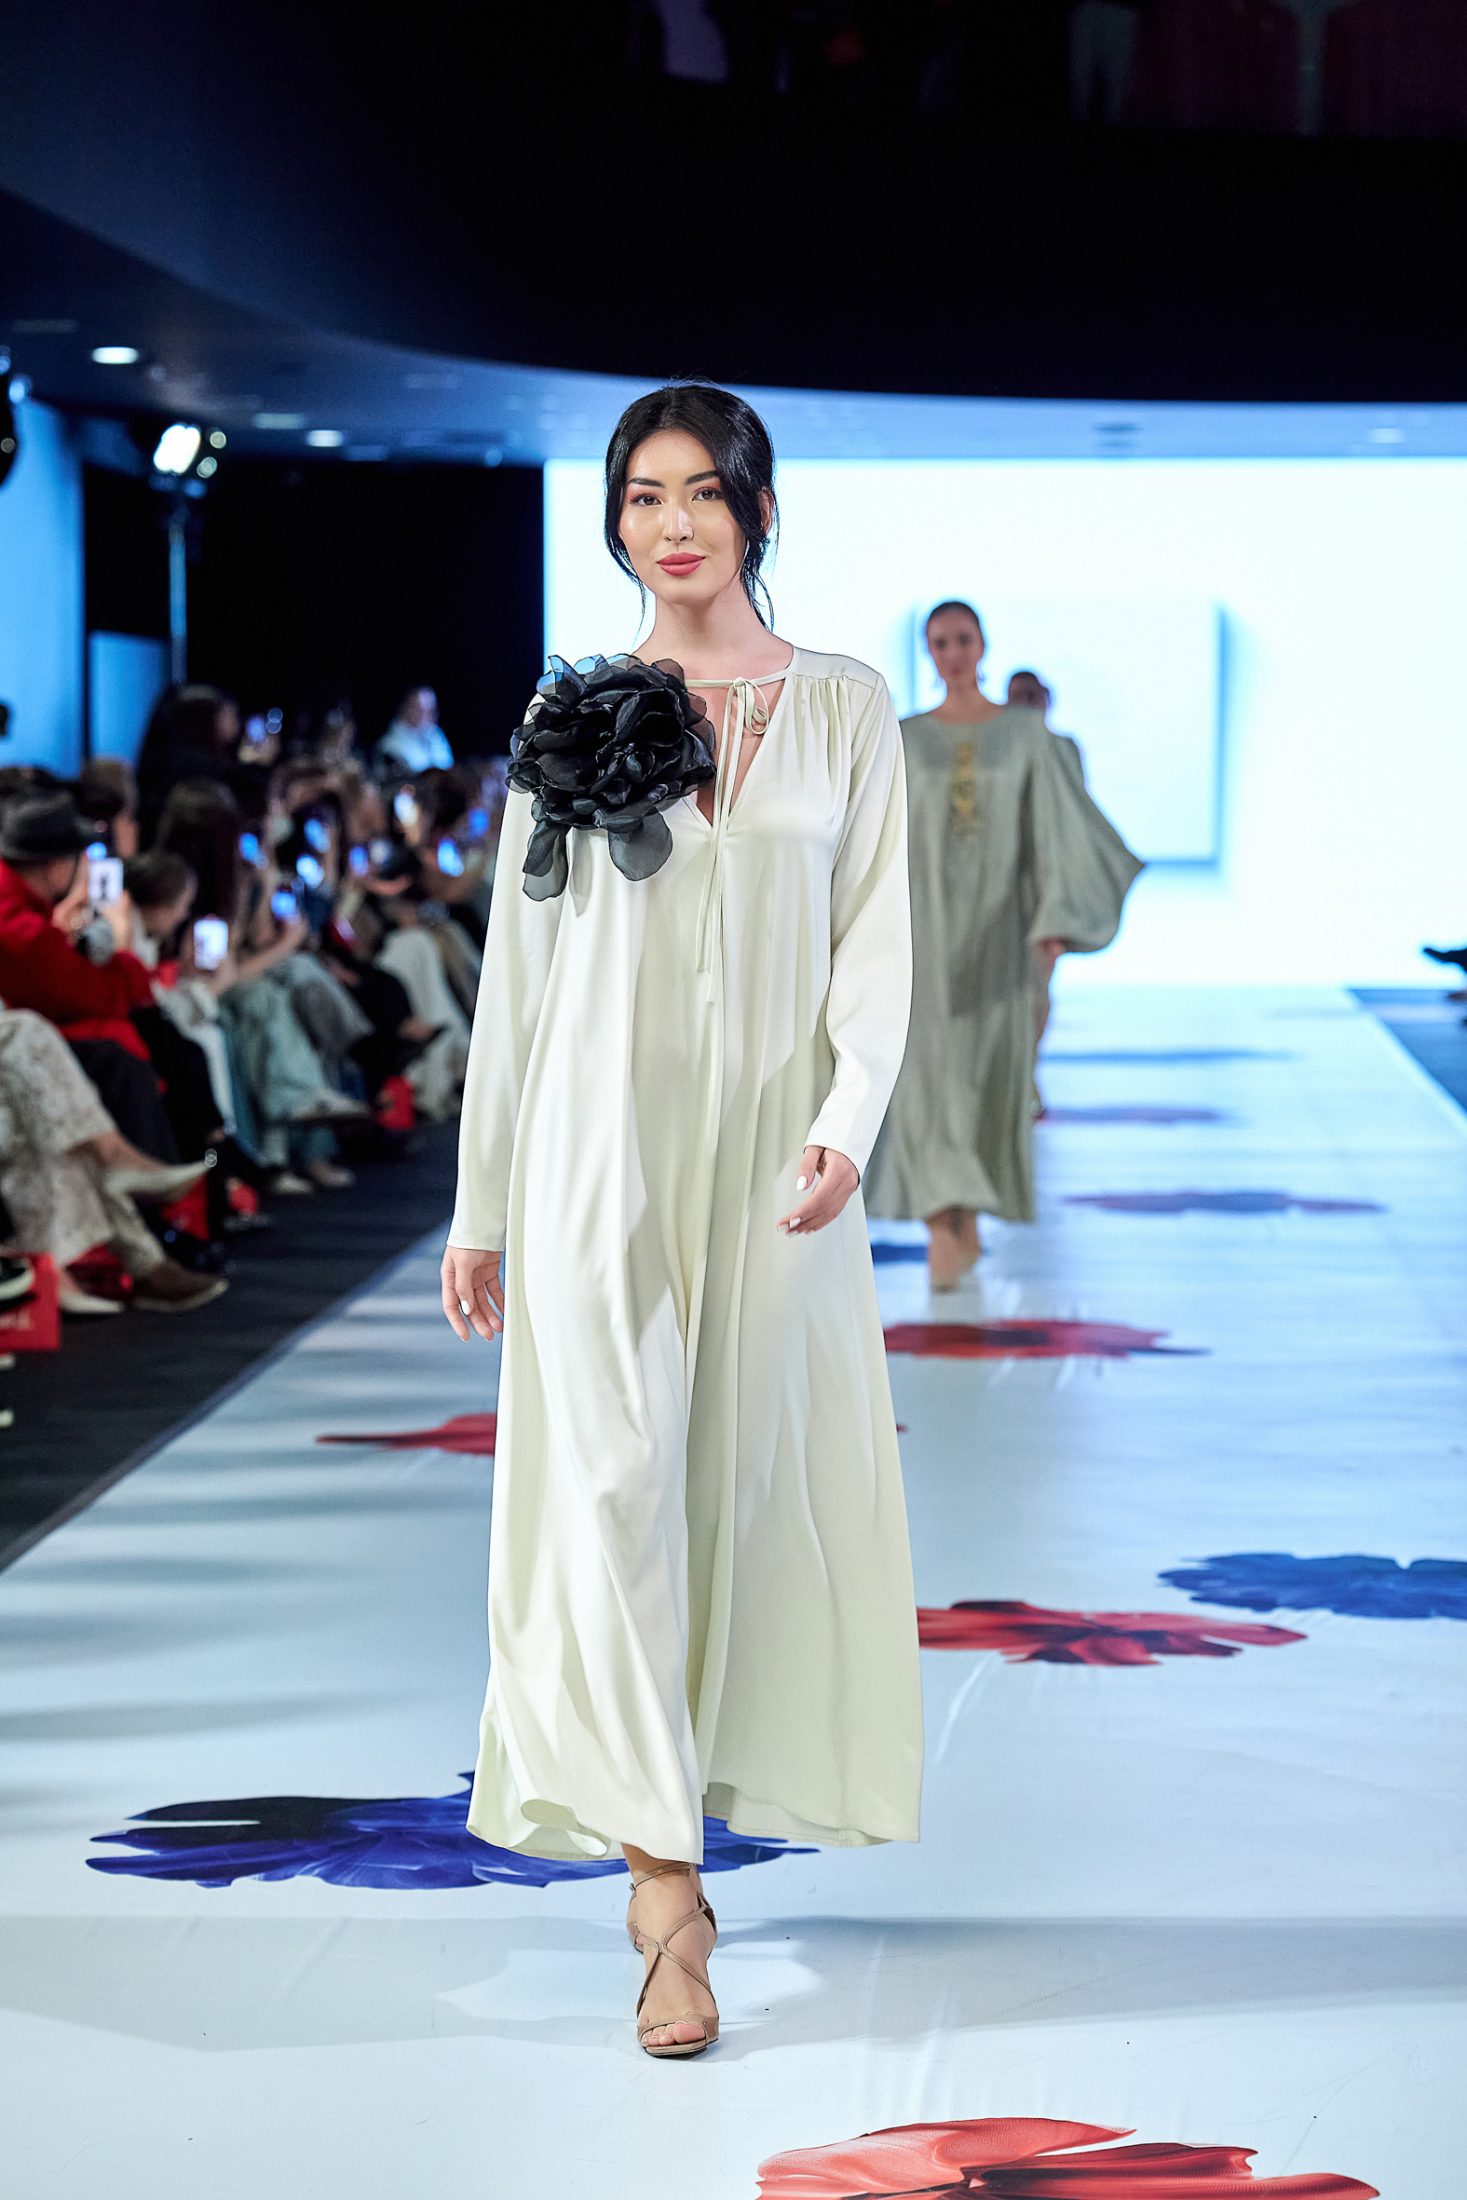 Национальные элементы, лошади и ненавязчивая деконструкция: второй день Kazakhstan Fashion Week